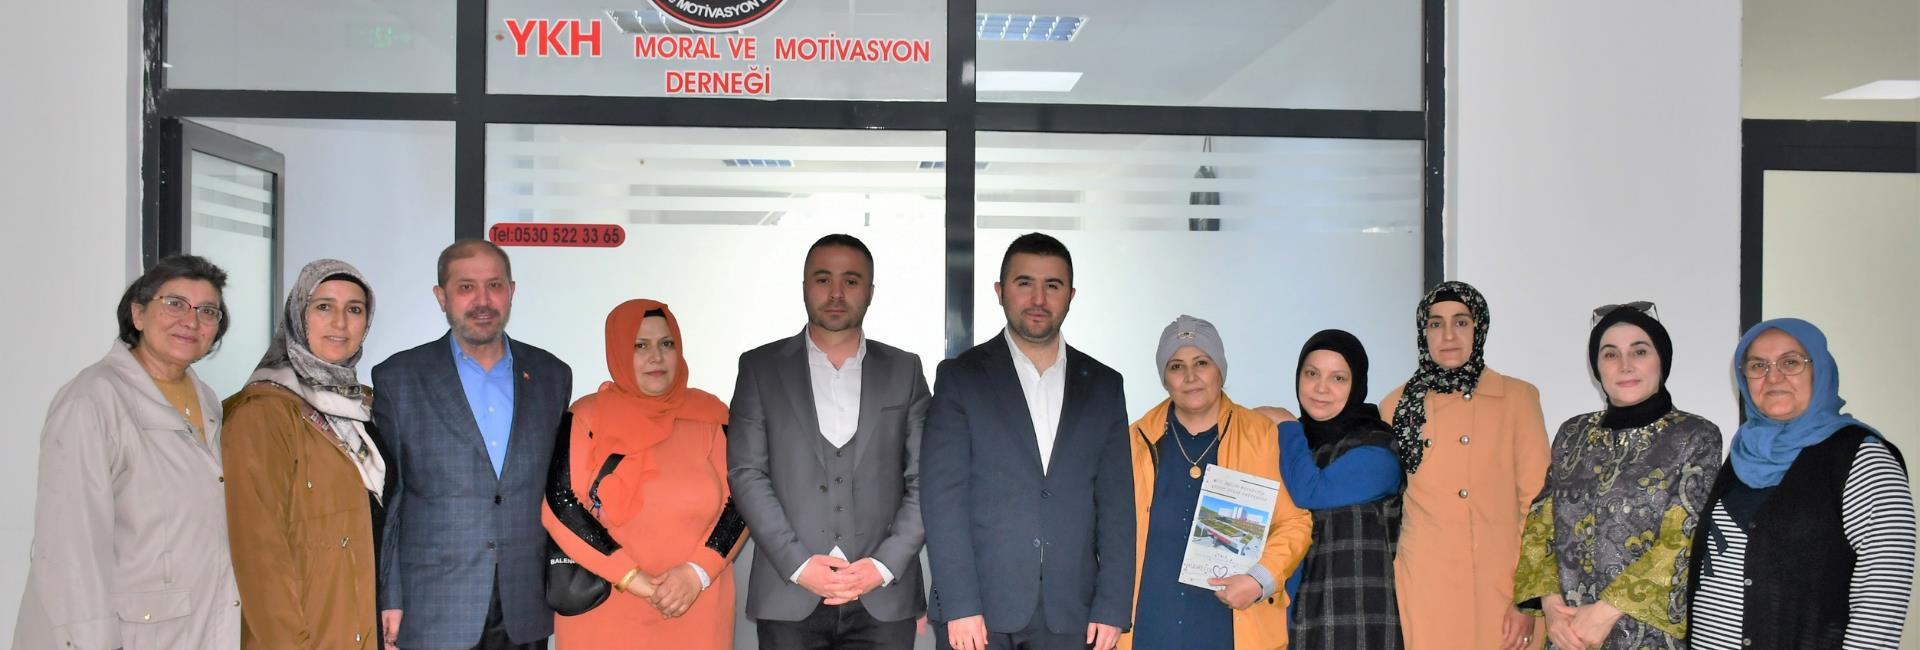 Başhekimimiz Uz. Dr. Mustafa KOZAN ve İdari ve Mali İşler Müdür Yardımcımız Mehmet KÜÇÜKASLAN Yozgat Kanser Hastaları Moral ve Motivasyon Derneğini Ziyaret Etti